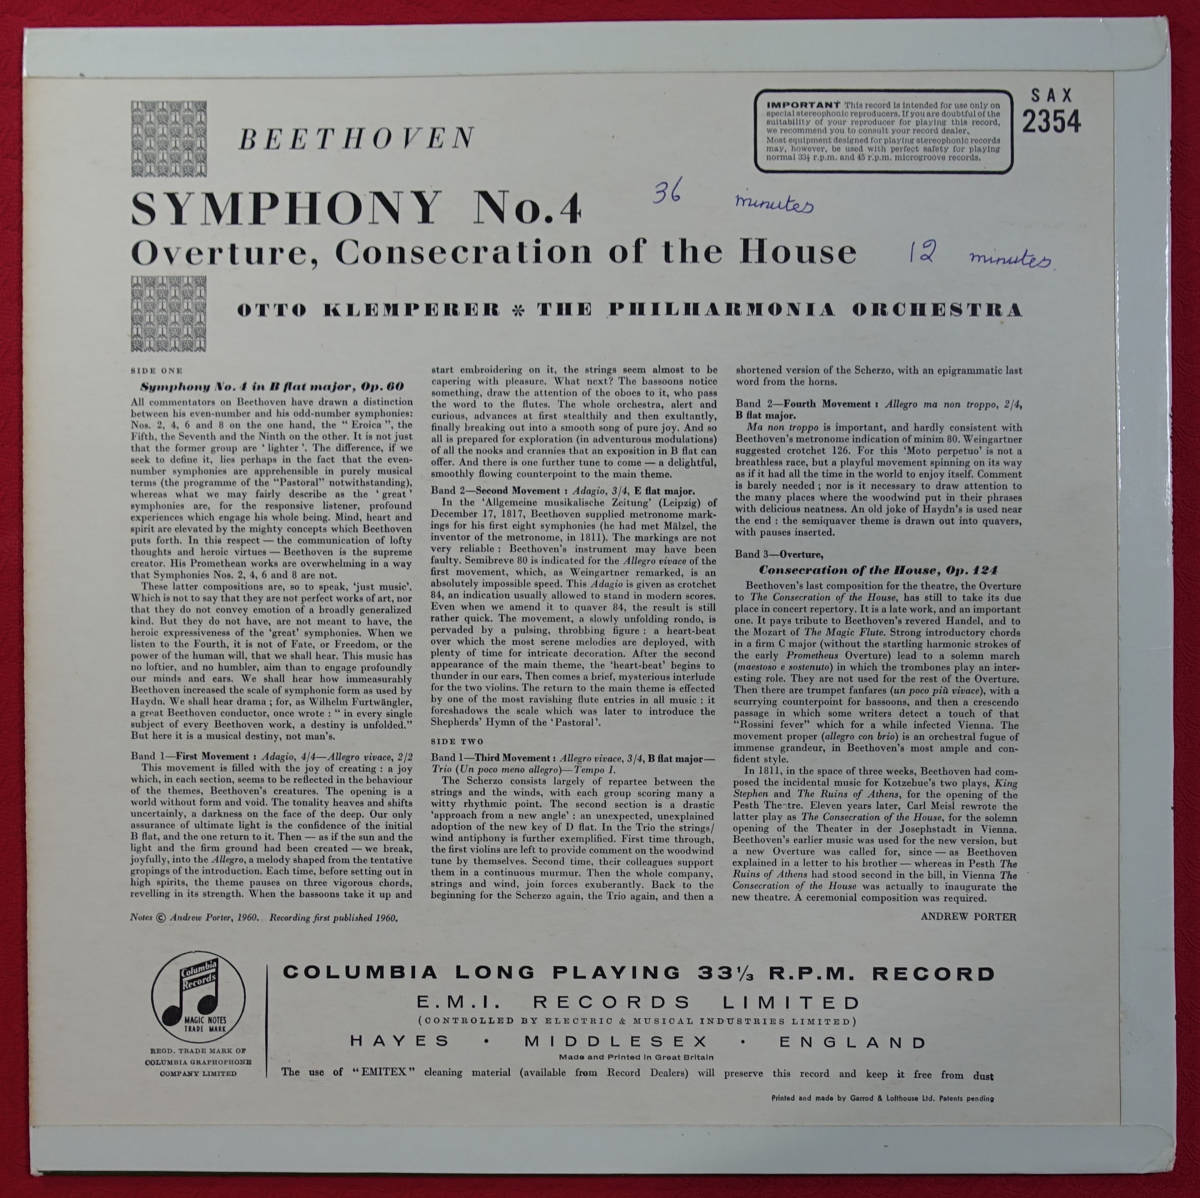 極美! 英Columbia SAX 2354 B&S ベートーヴェン交響曲第4番 クレンペラー_画像2